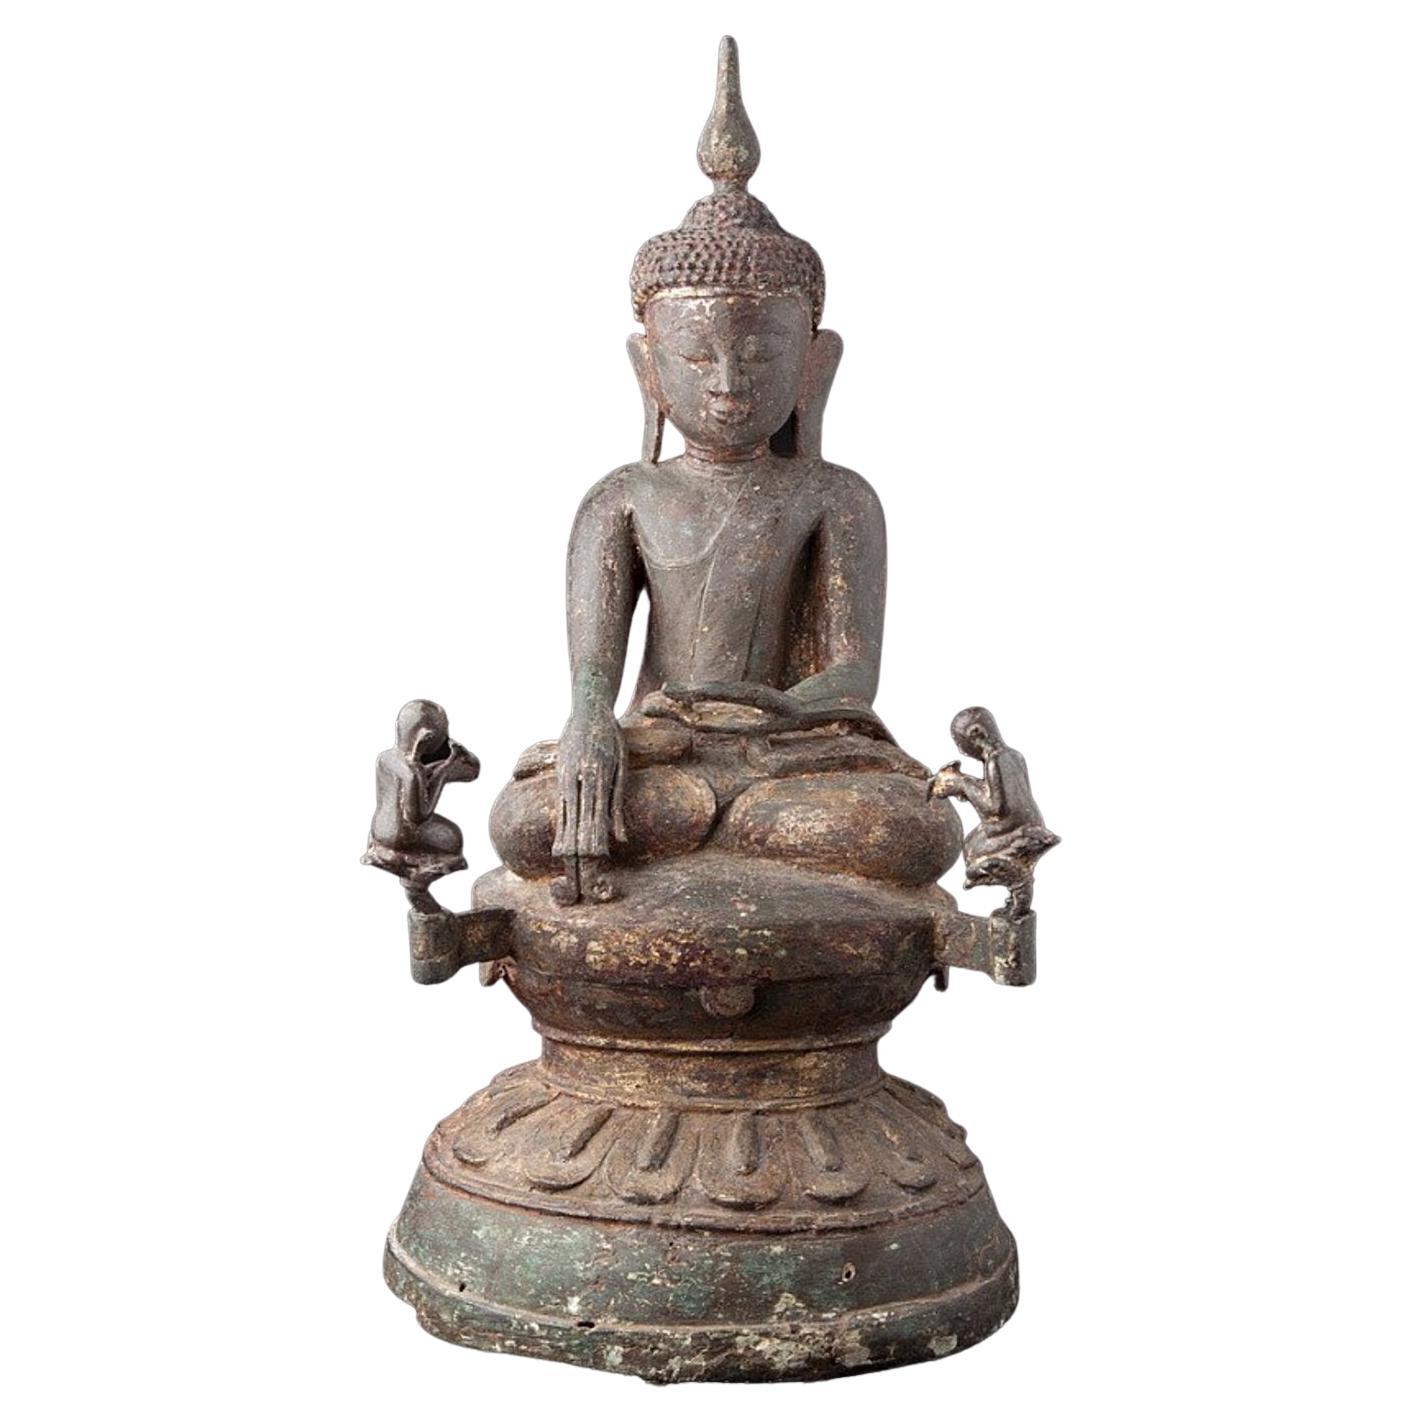 Special Bronze Ava Buddha Statue from Burma Original Buddhas For Sale